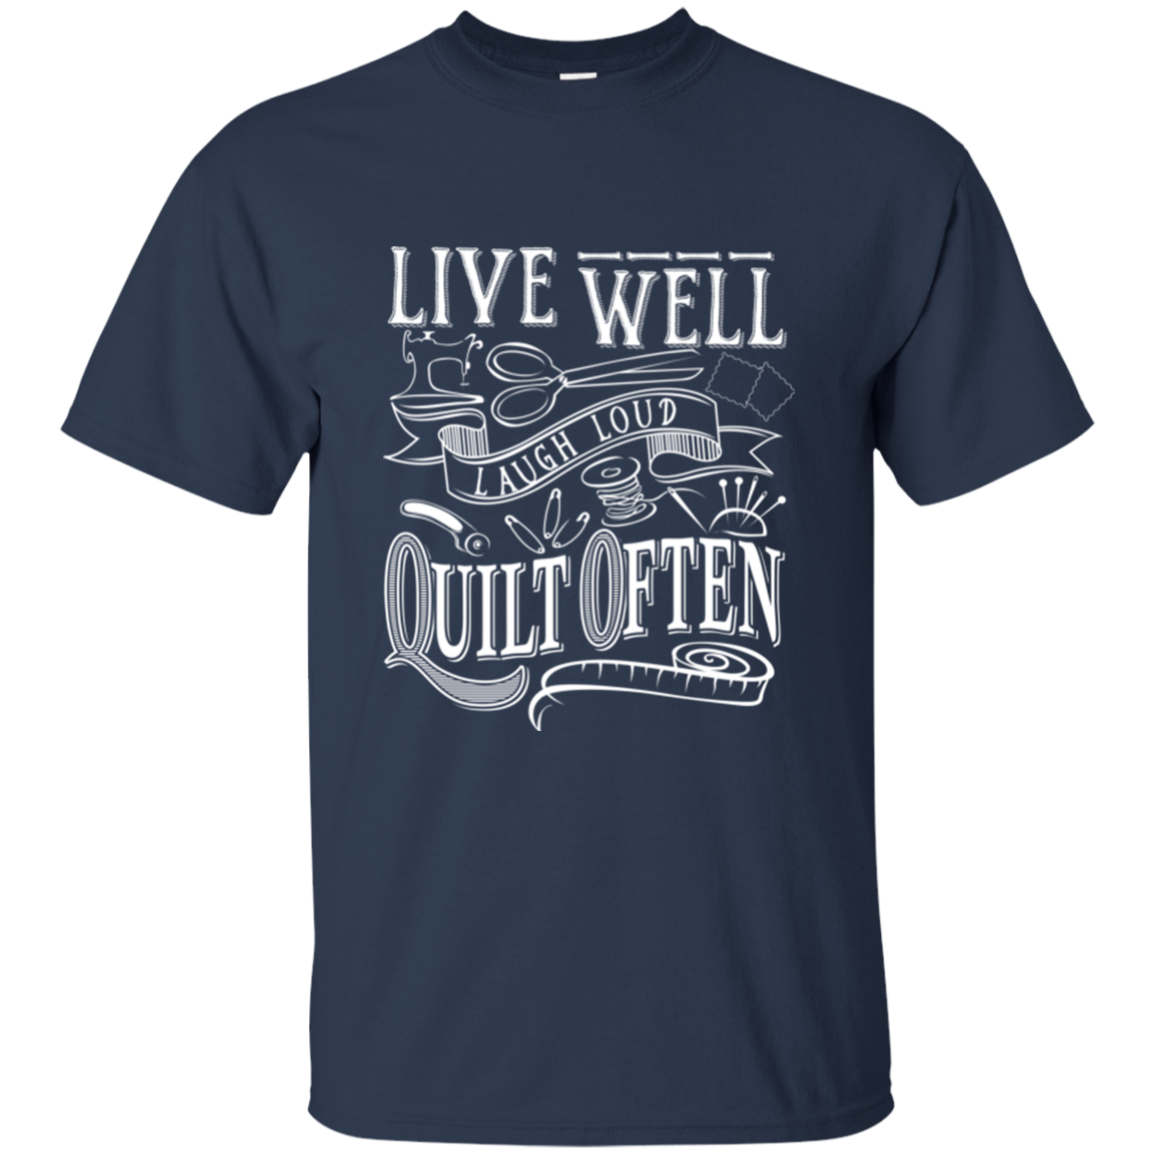 Live Well, Quilt Often Ultra Cotton T-Shirt